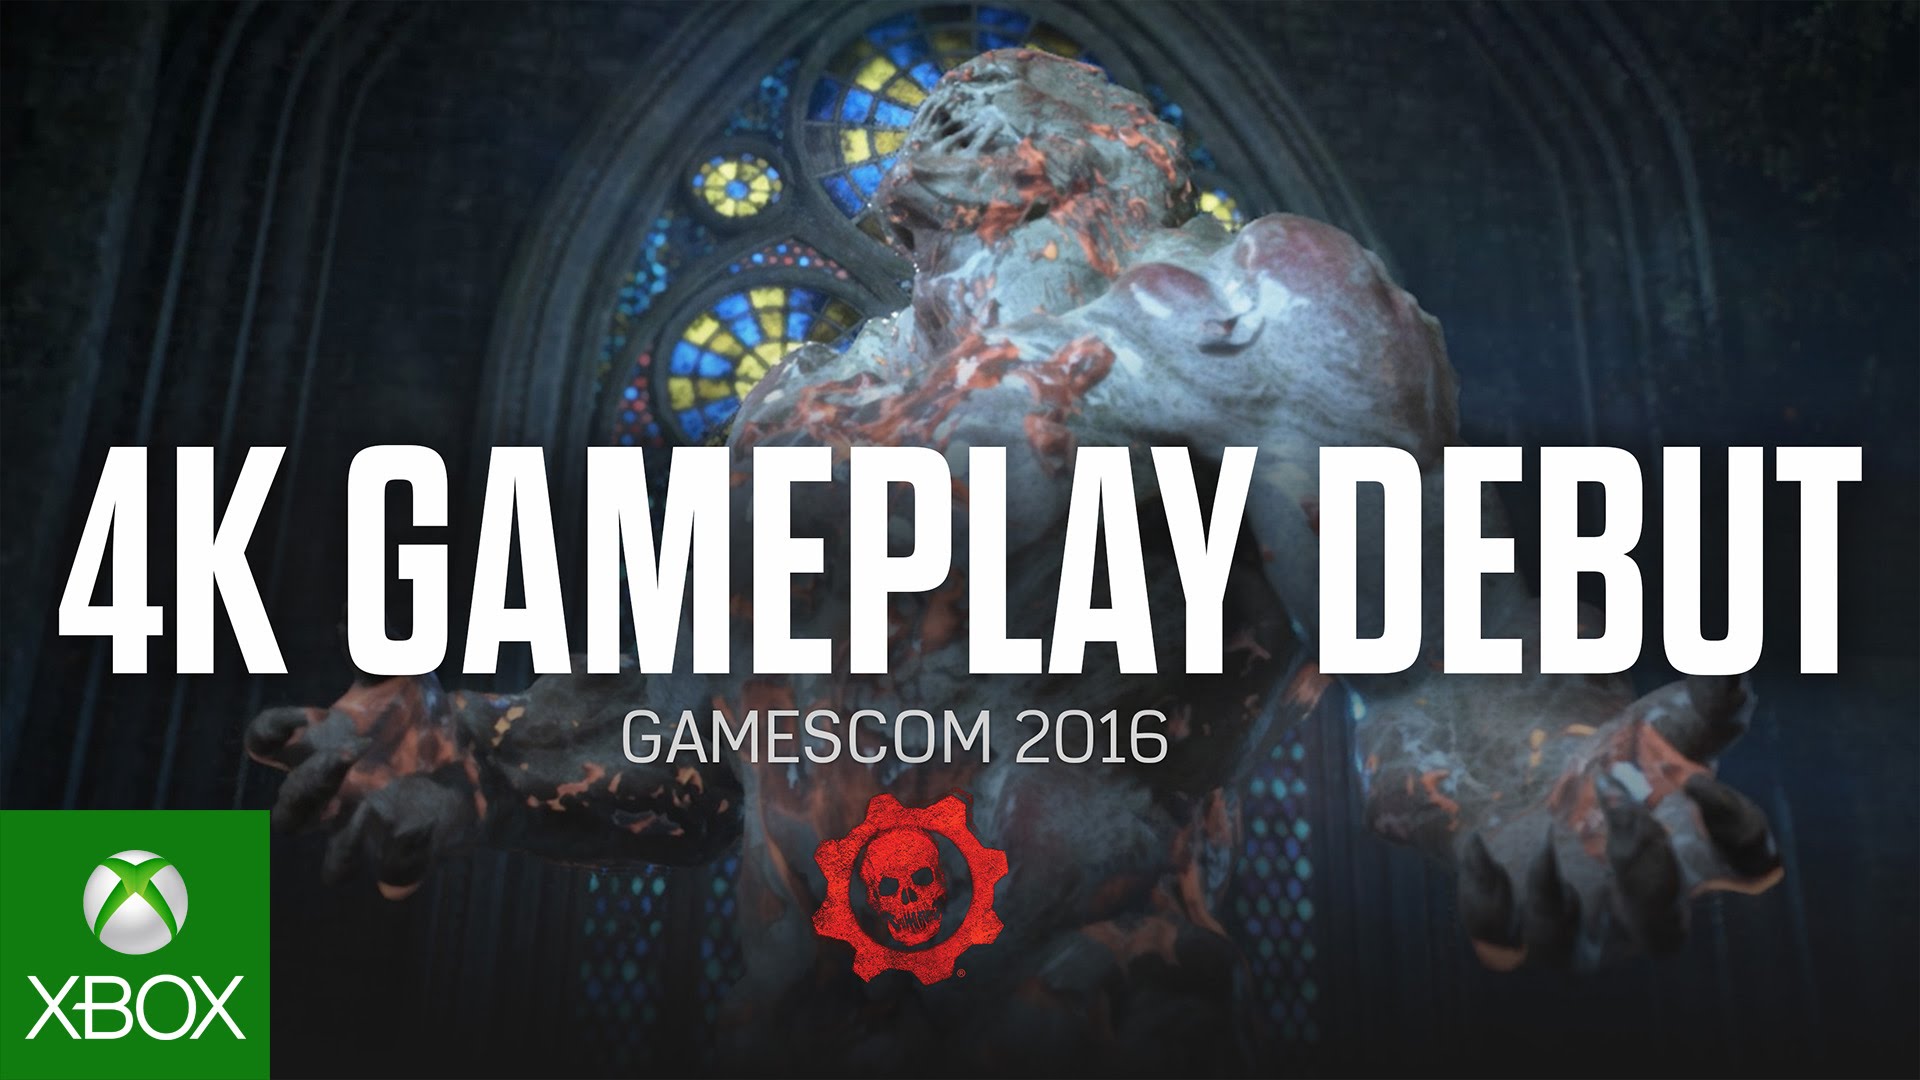 Gears of War 4 - 4K Gameplay Debut ( Gamescom 2016 )